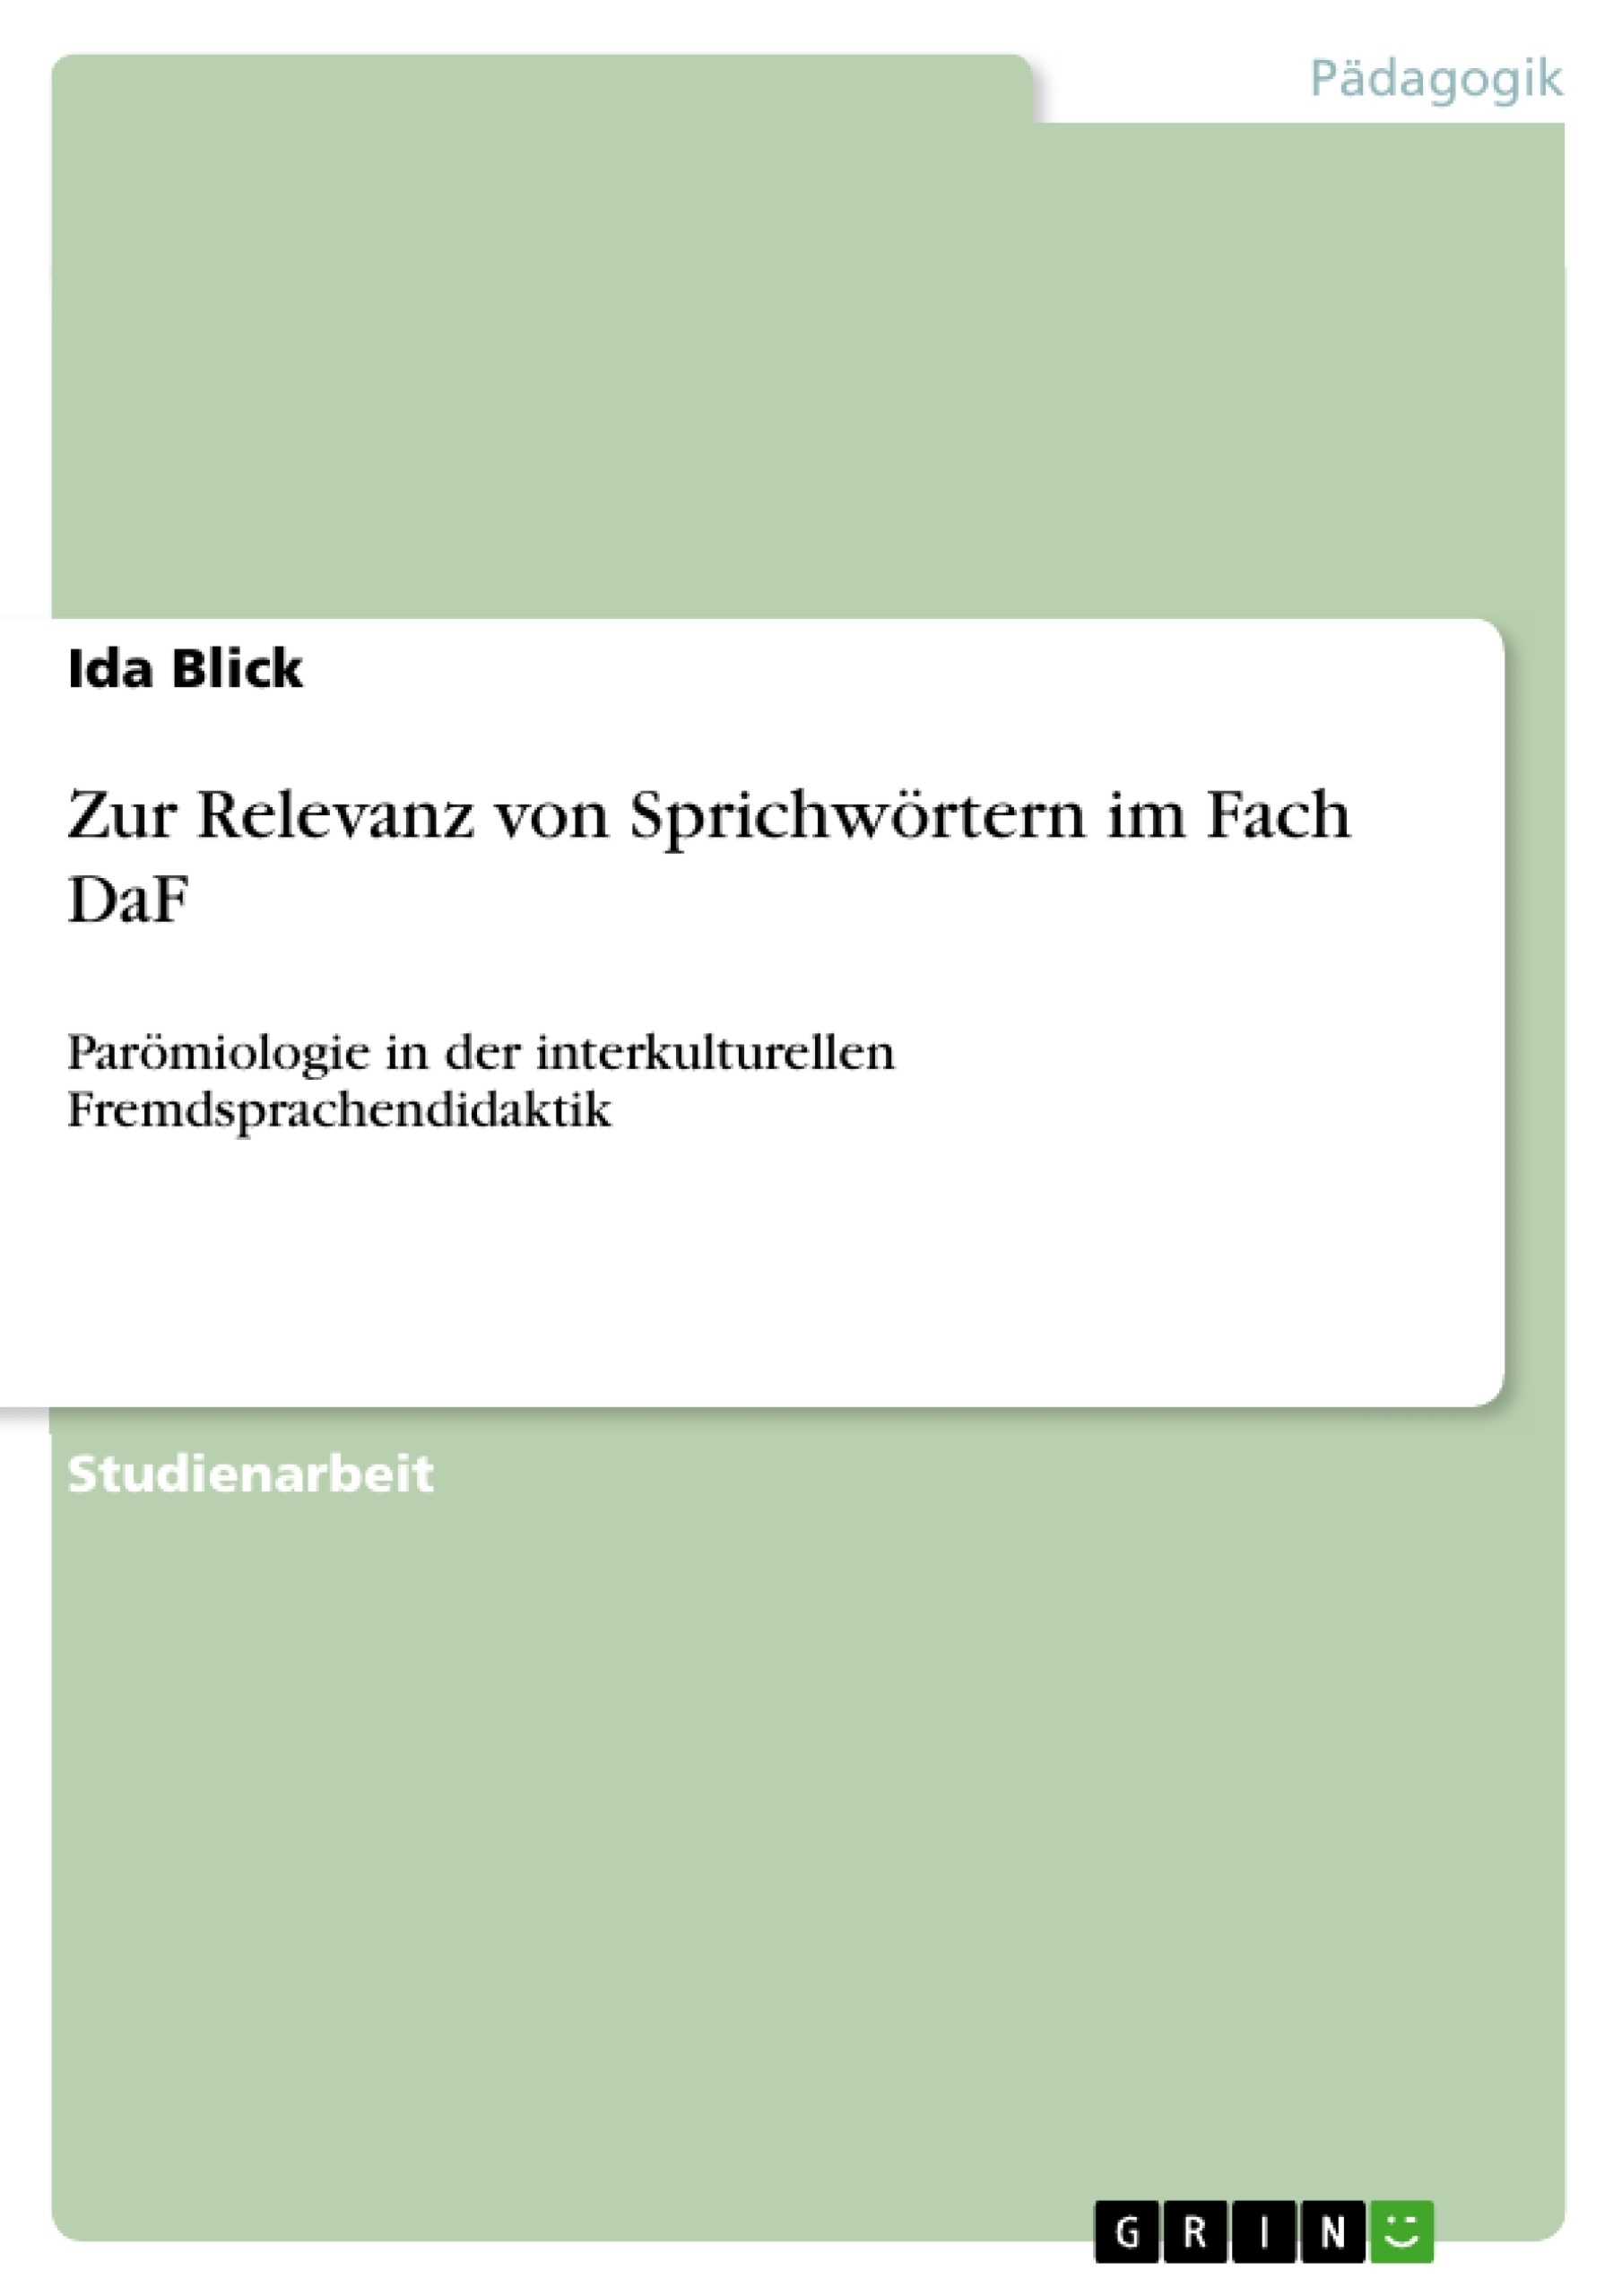 Title: Zur Relevanz von Sprichwörtern im Fach DaF